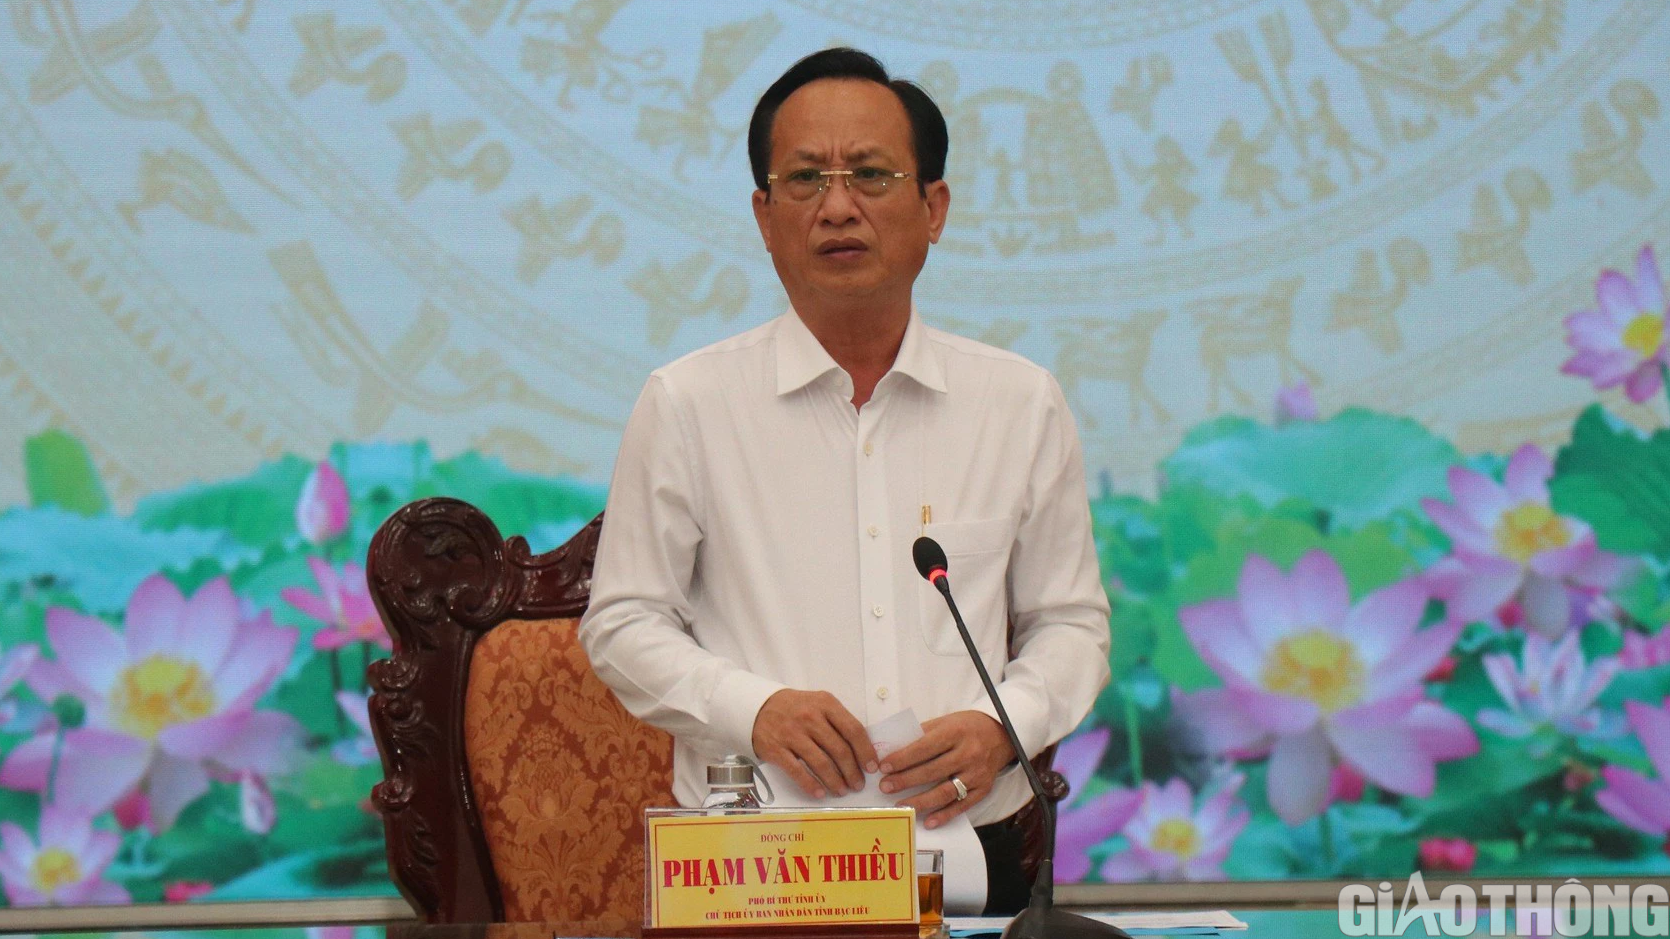 Chủ tịch tỉnh Bạc Liêu: Phản ánh qua đường dây nóng cần rõ ràng - Ảnh 1.